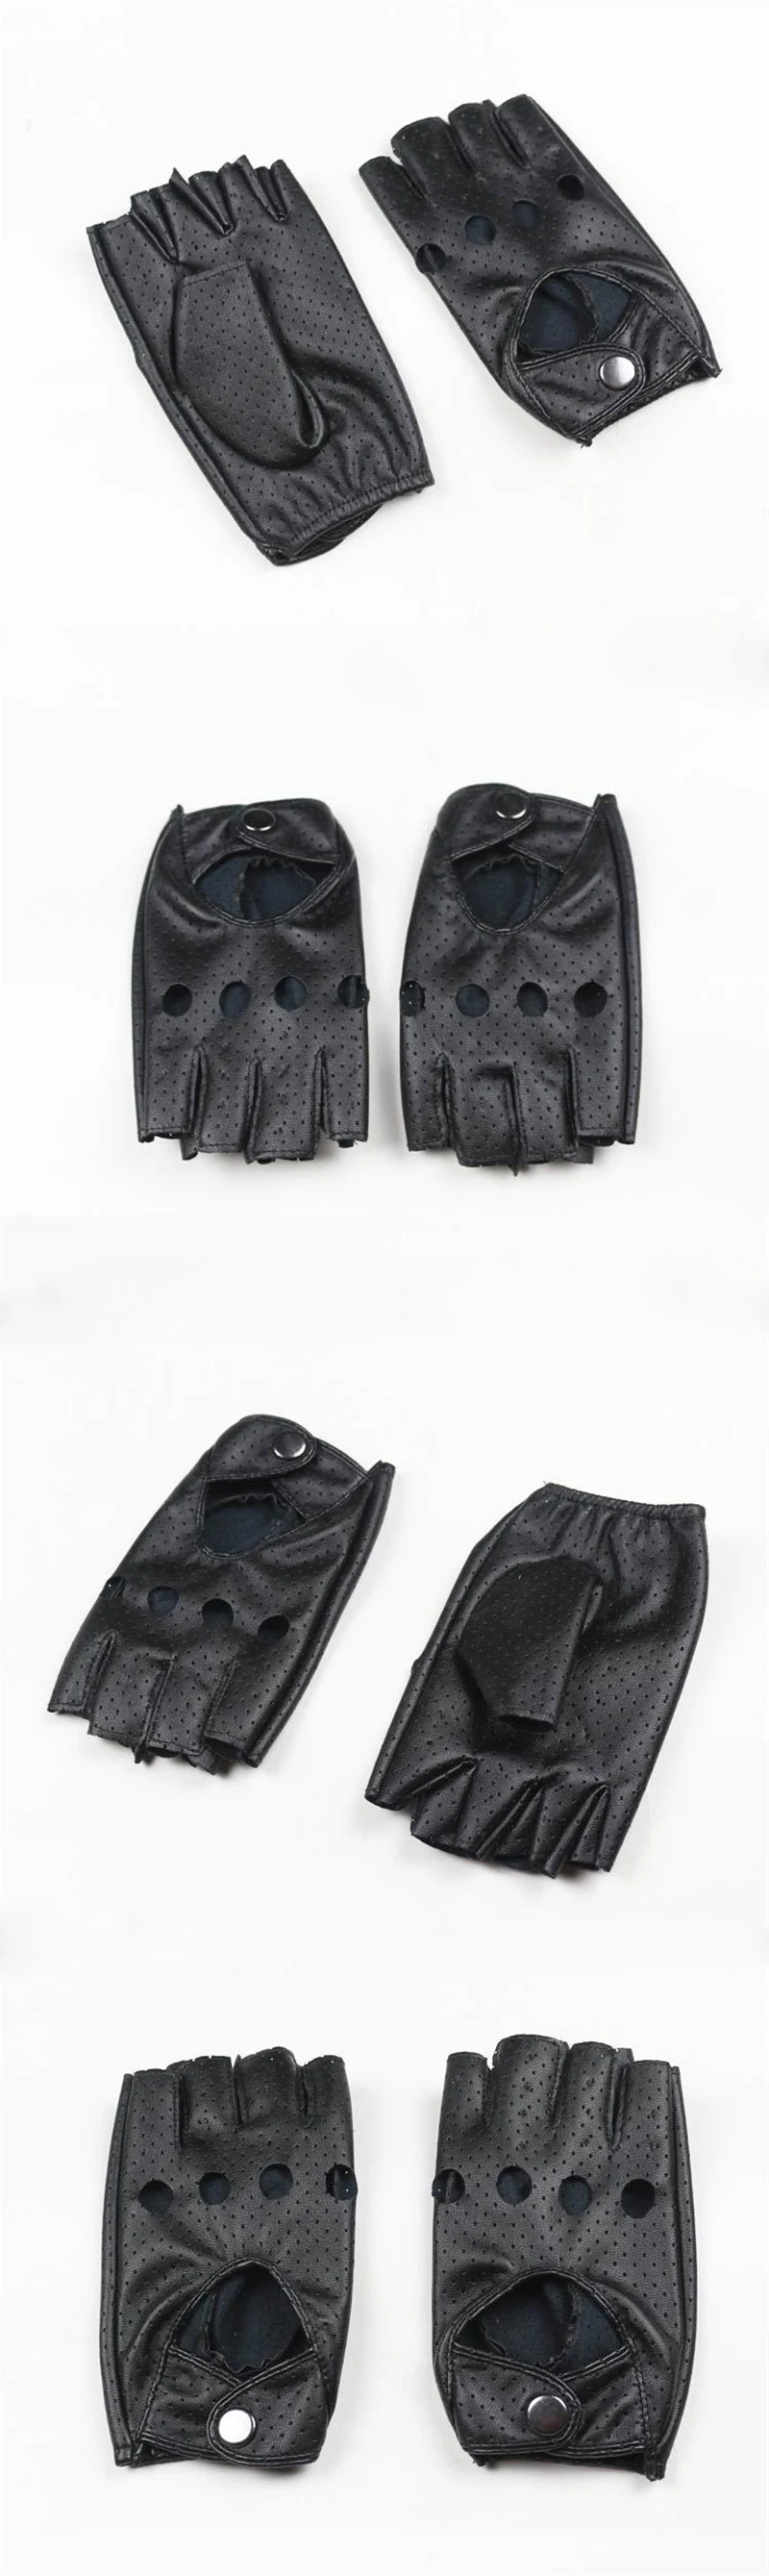 Длинные перчатки для мужчин и женщин, полый кожзаменитель, кожаные перчатки-митенки, черные перчатки без пальцев, женские перчатки для